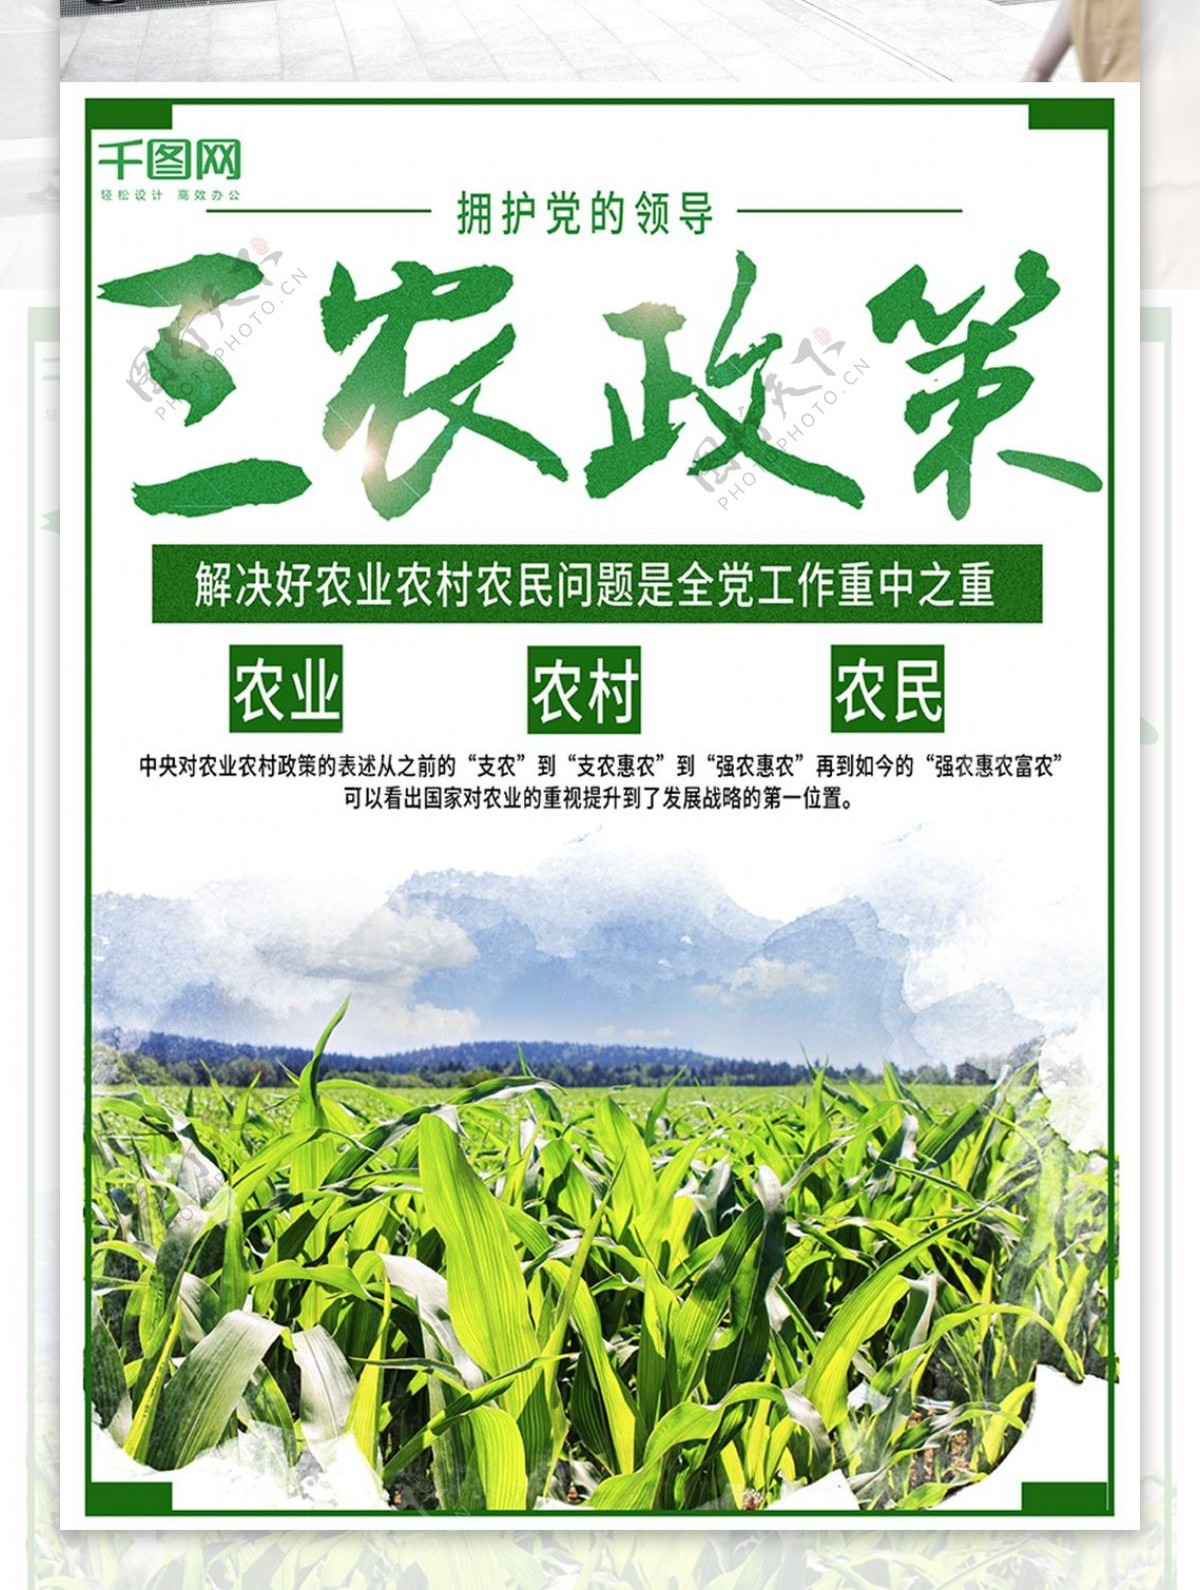 三农政策绿色简约海报